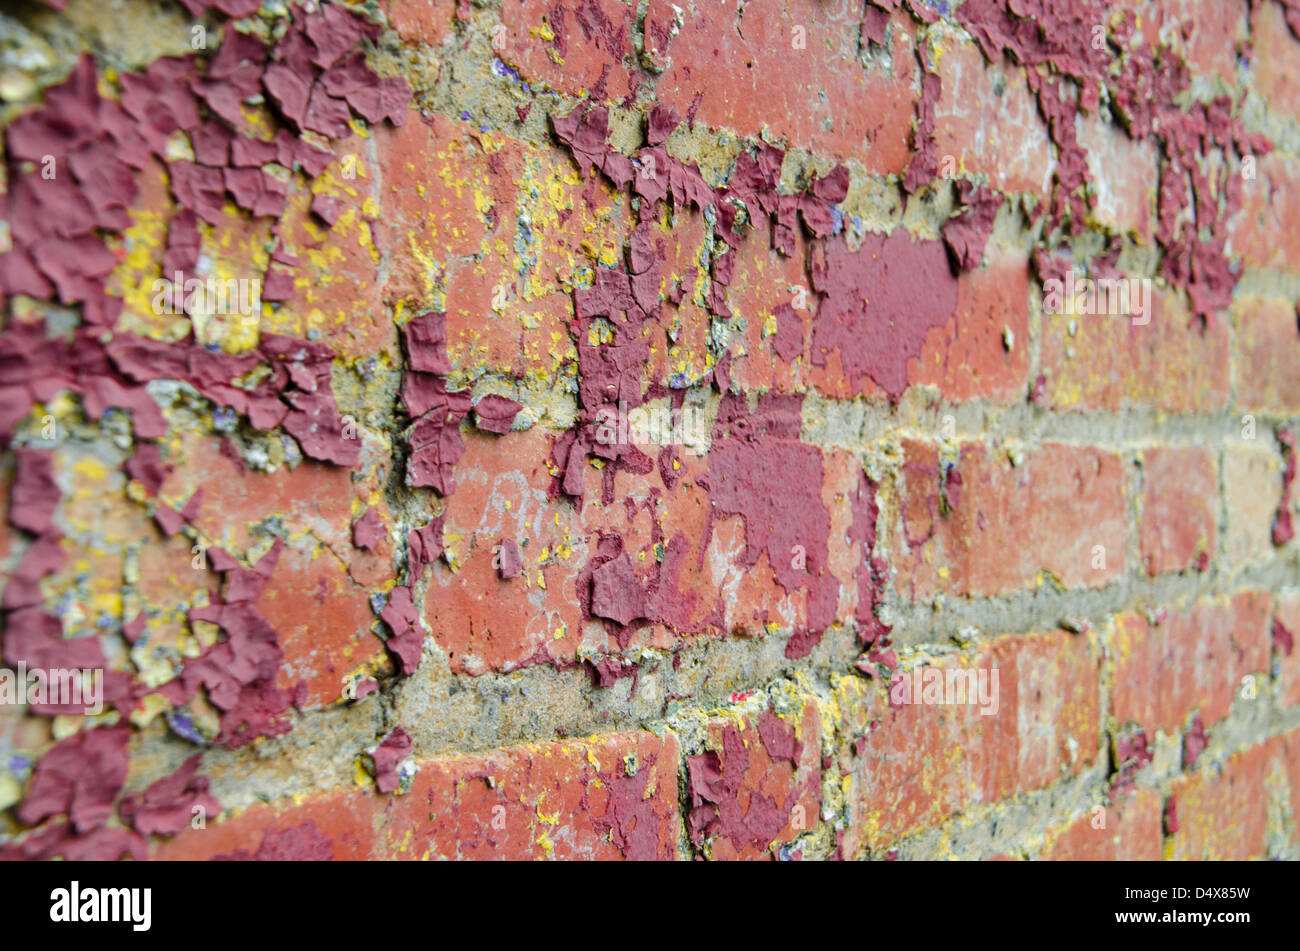 Fond urbain graveleux texture mur de brique rouge foncé avec de la peinture rouge et jaune des éclaboussures Banque D'Images